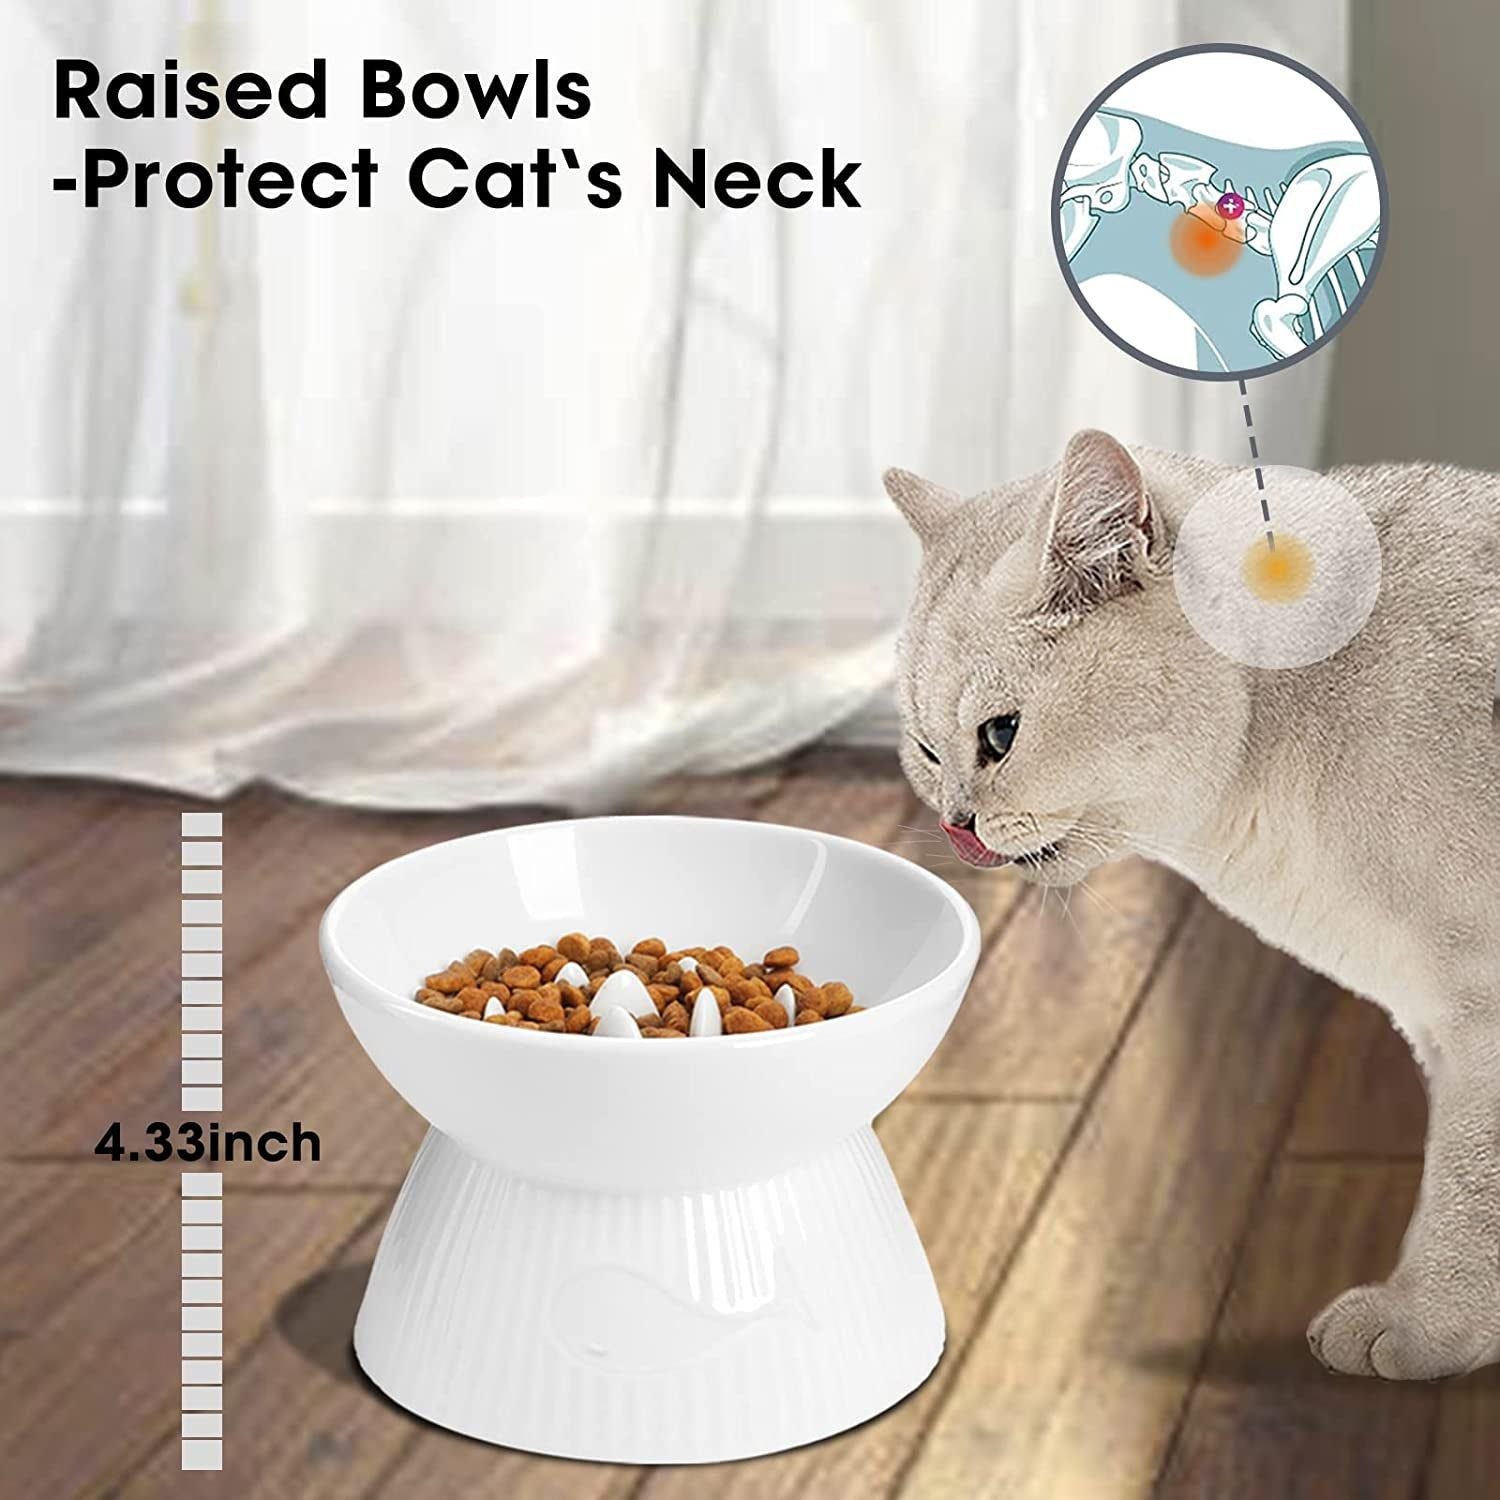 Ceramic Raised Cat Bowl